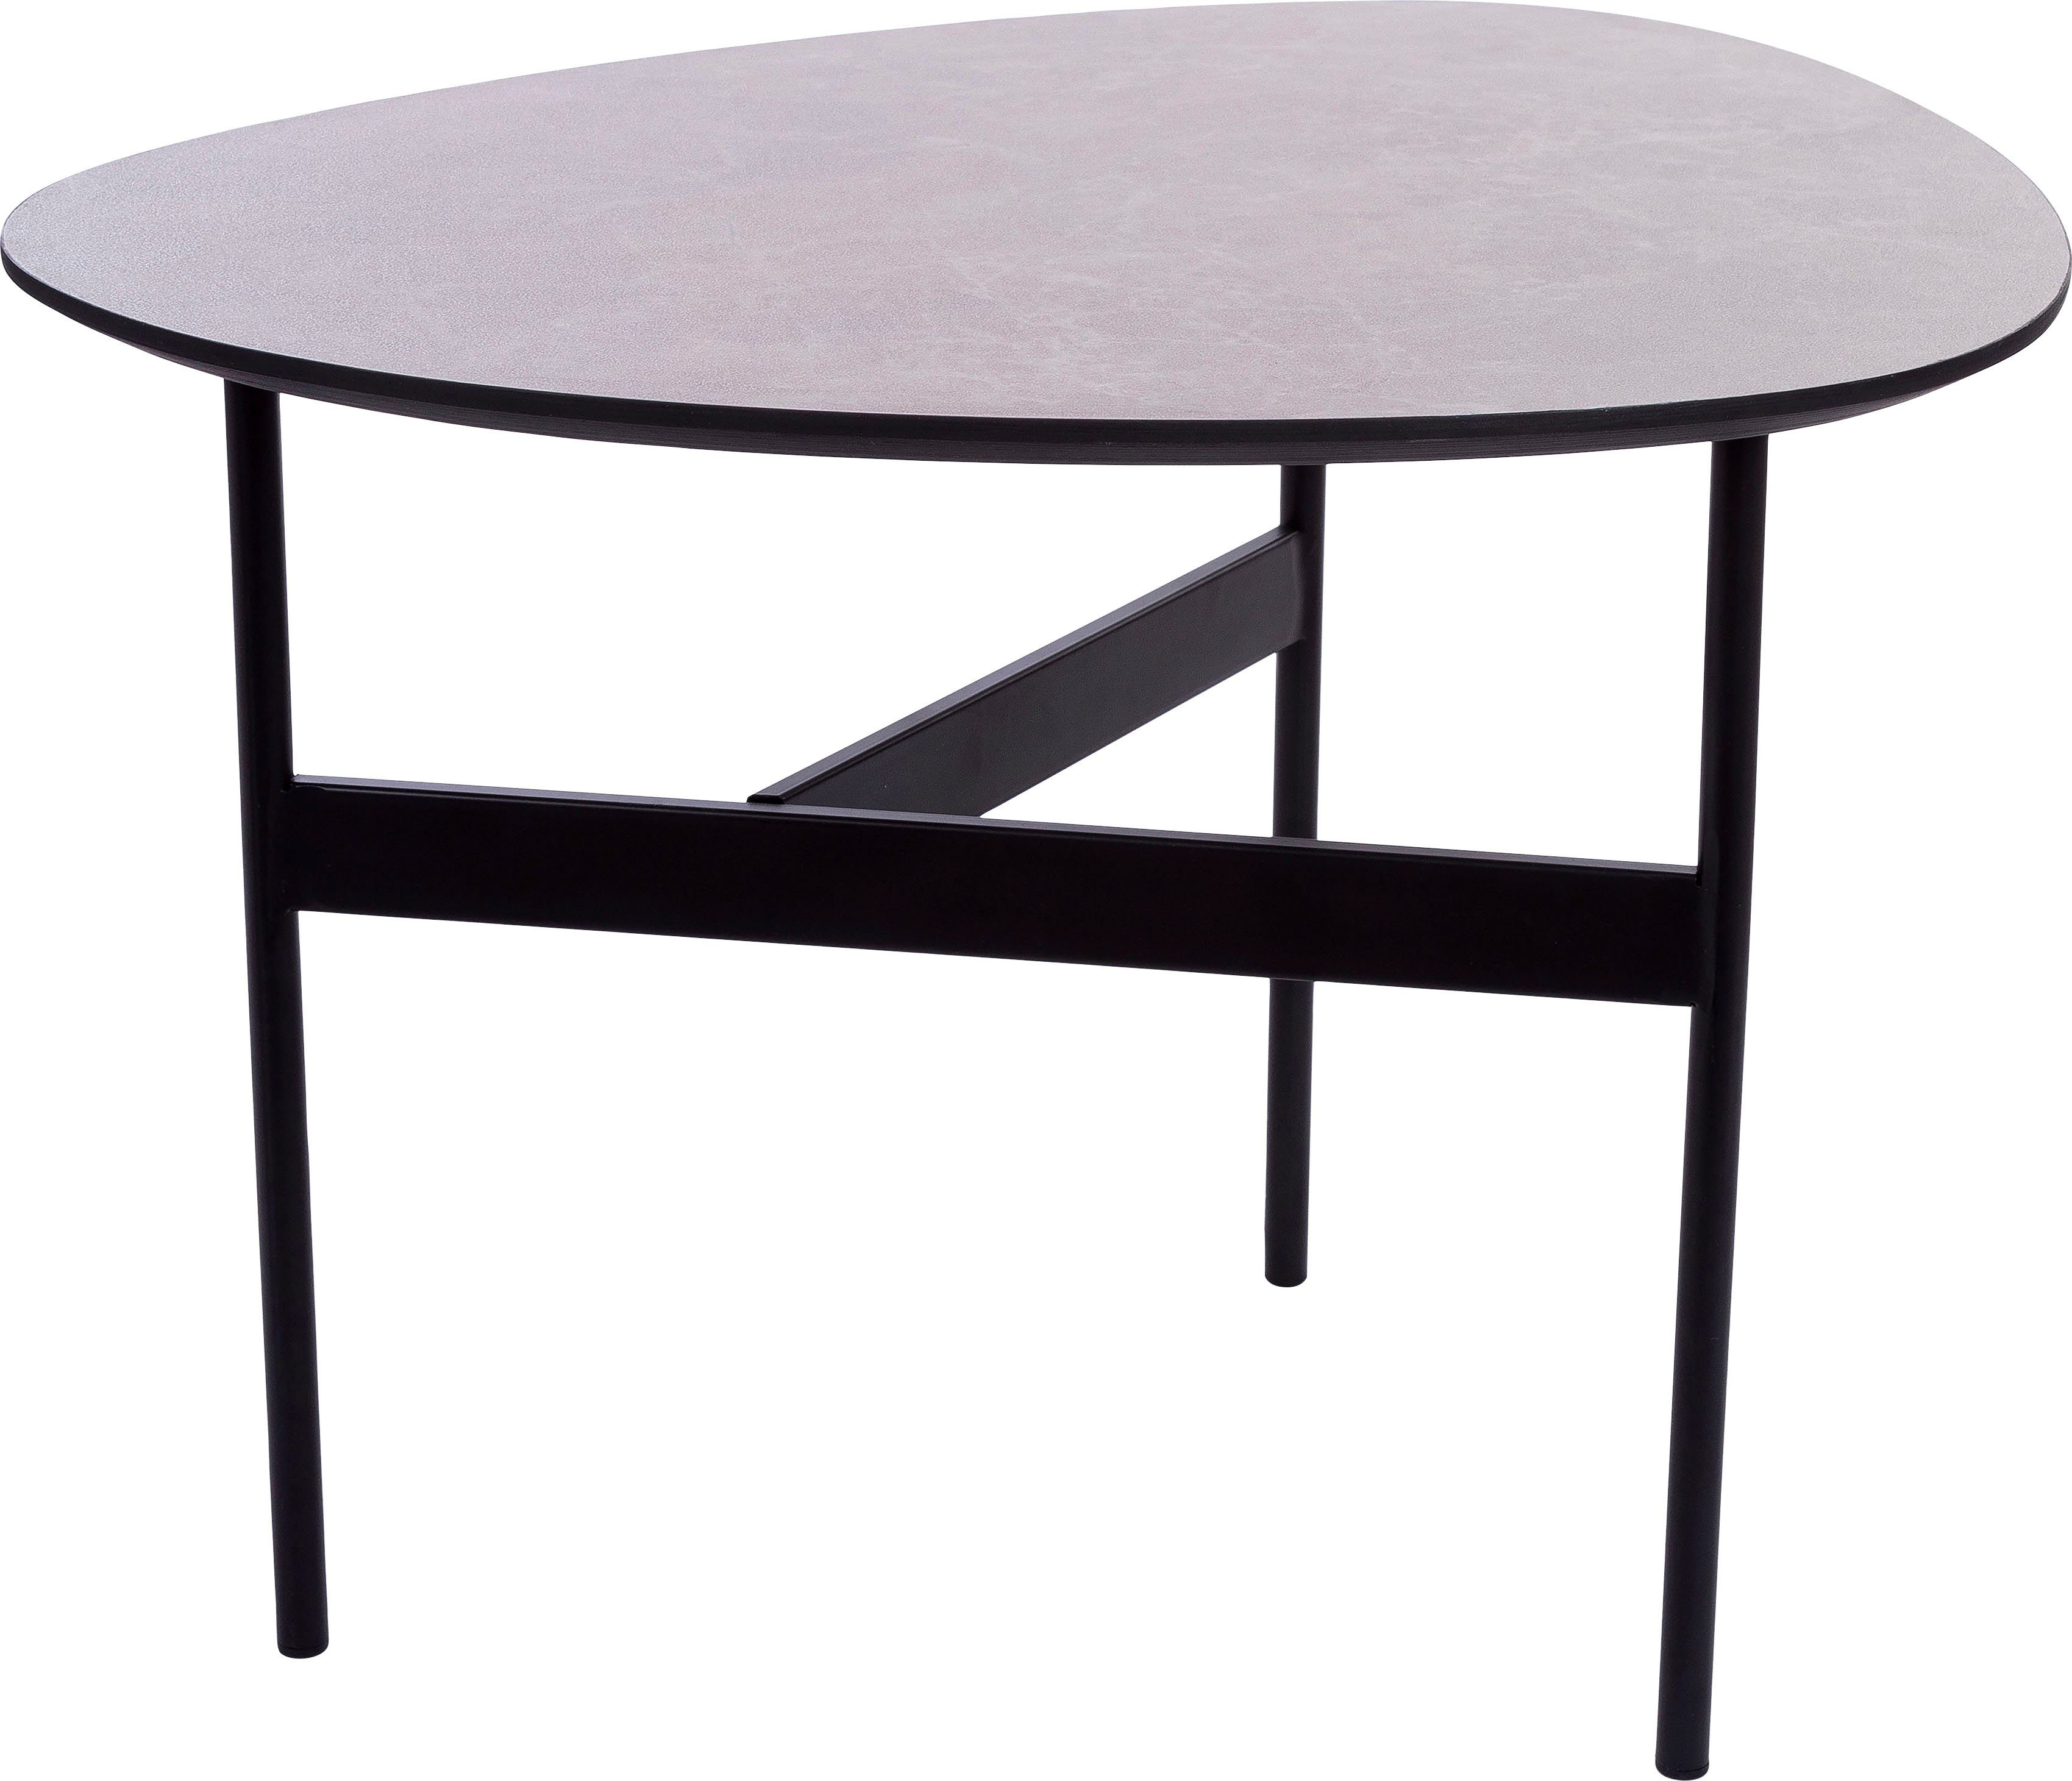 Home affaire Beistelltisch, Bein lackierter 3 Tischplatte, Gestell Oval, Beistelltisch grau